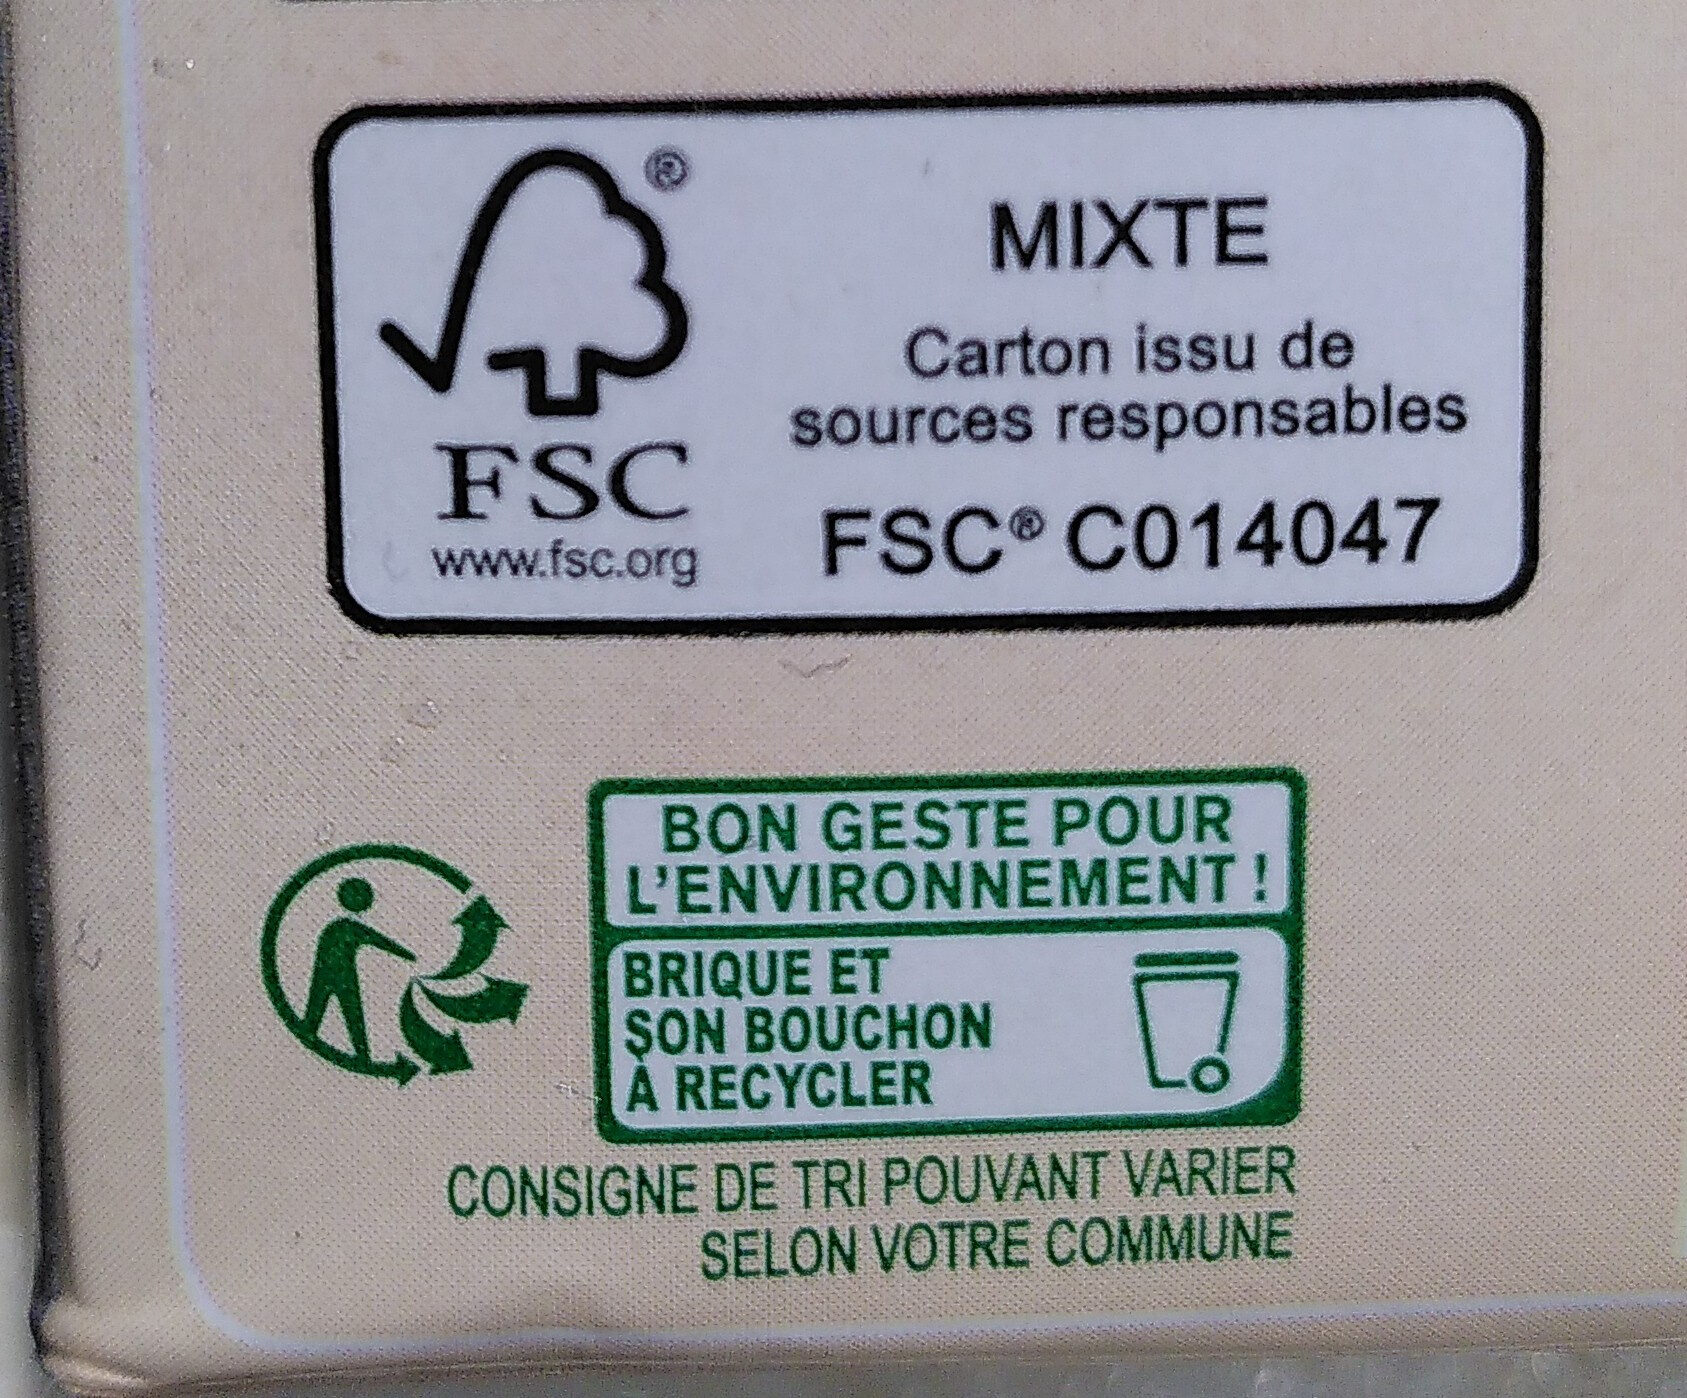 Boisson noisette - Istruzioni per il riciclaggio e/o informazioni sull'imballaggio - fr